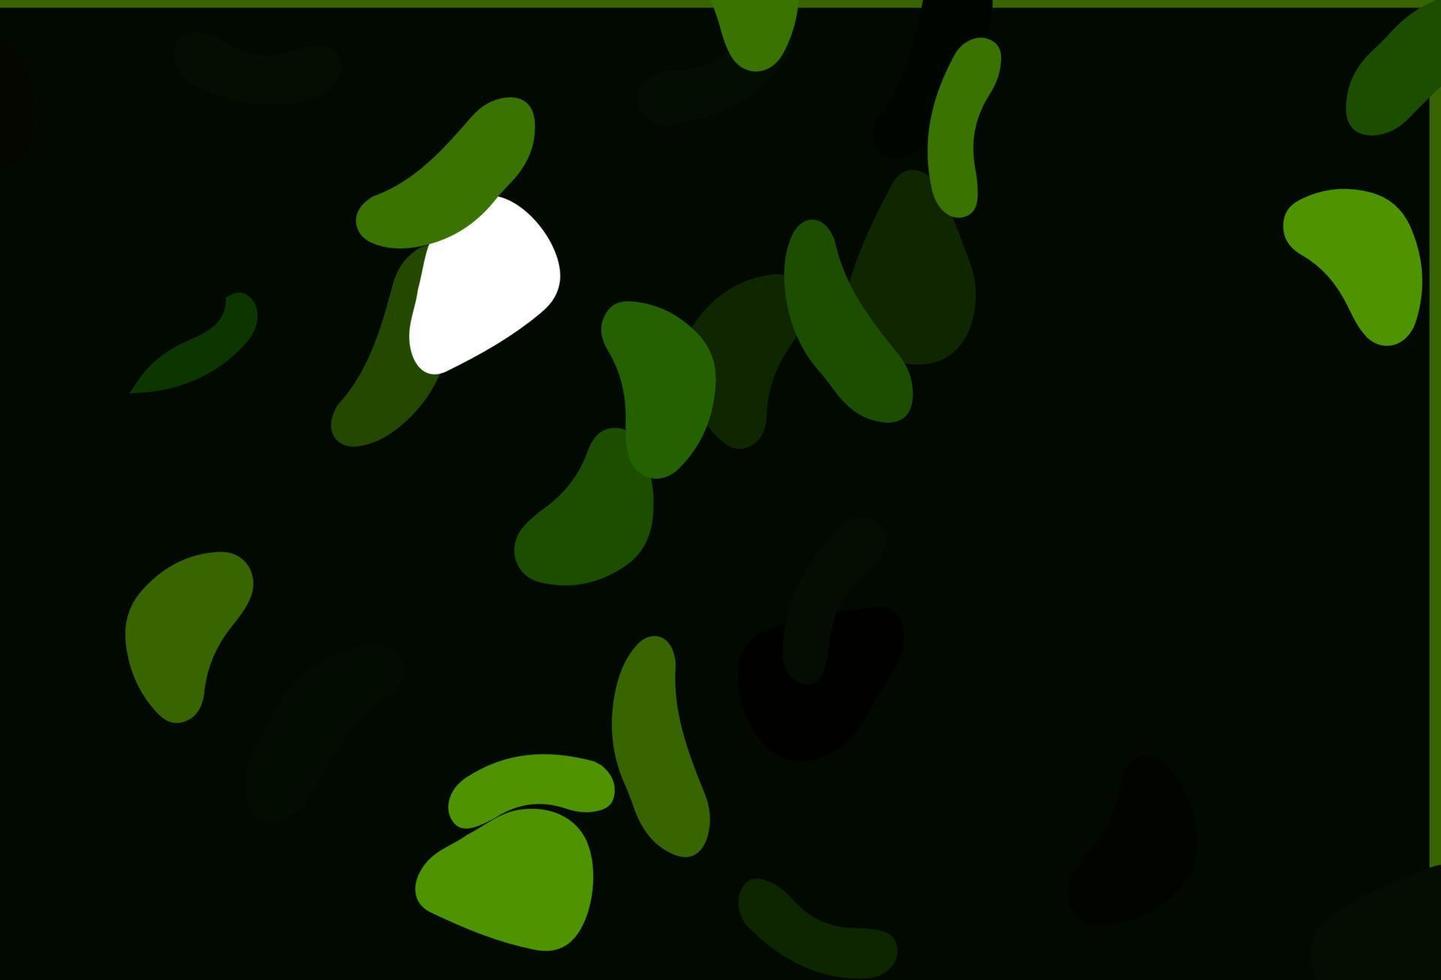 textura de vector verde claro con formas aleatorias.